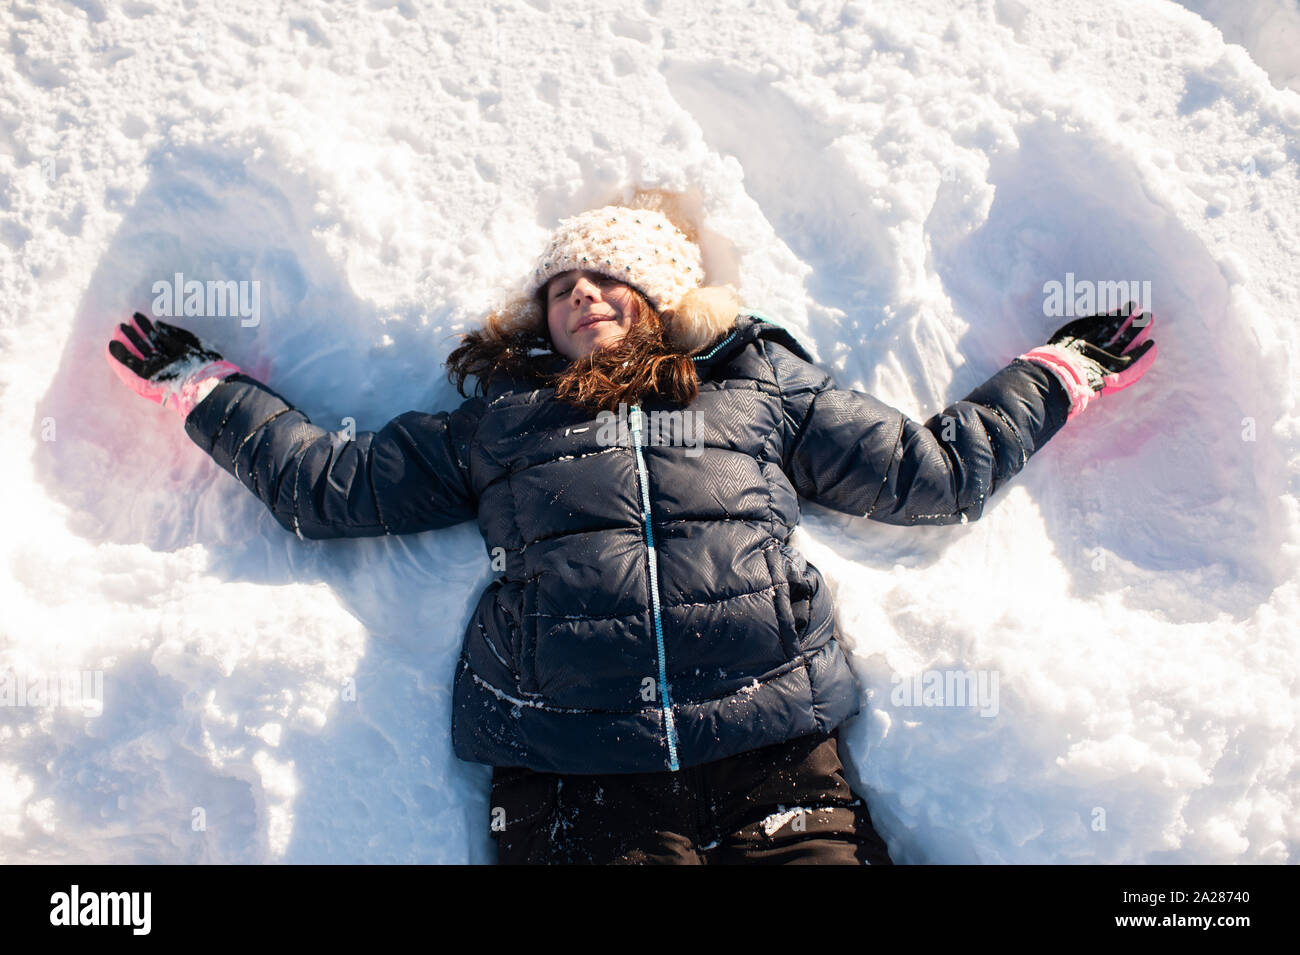 Pantaloni da neve immagini e fotografie stock ad alta risoluzione - Alamy